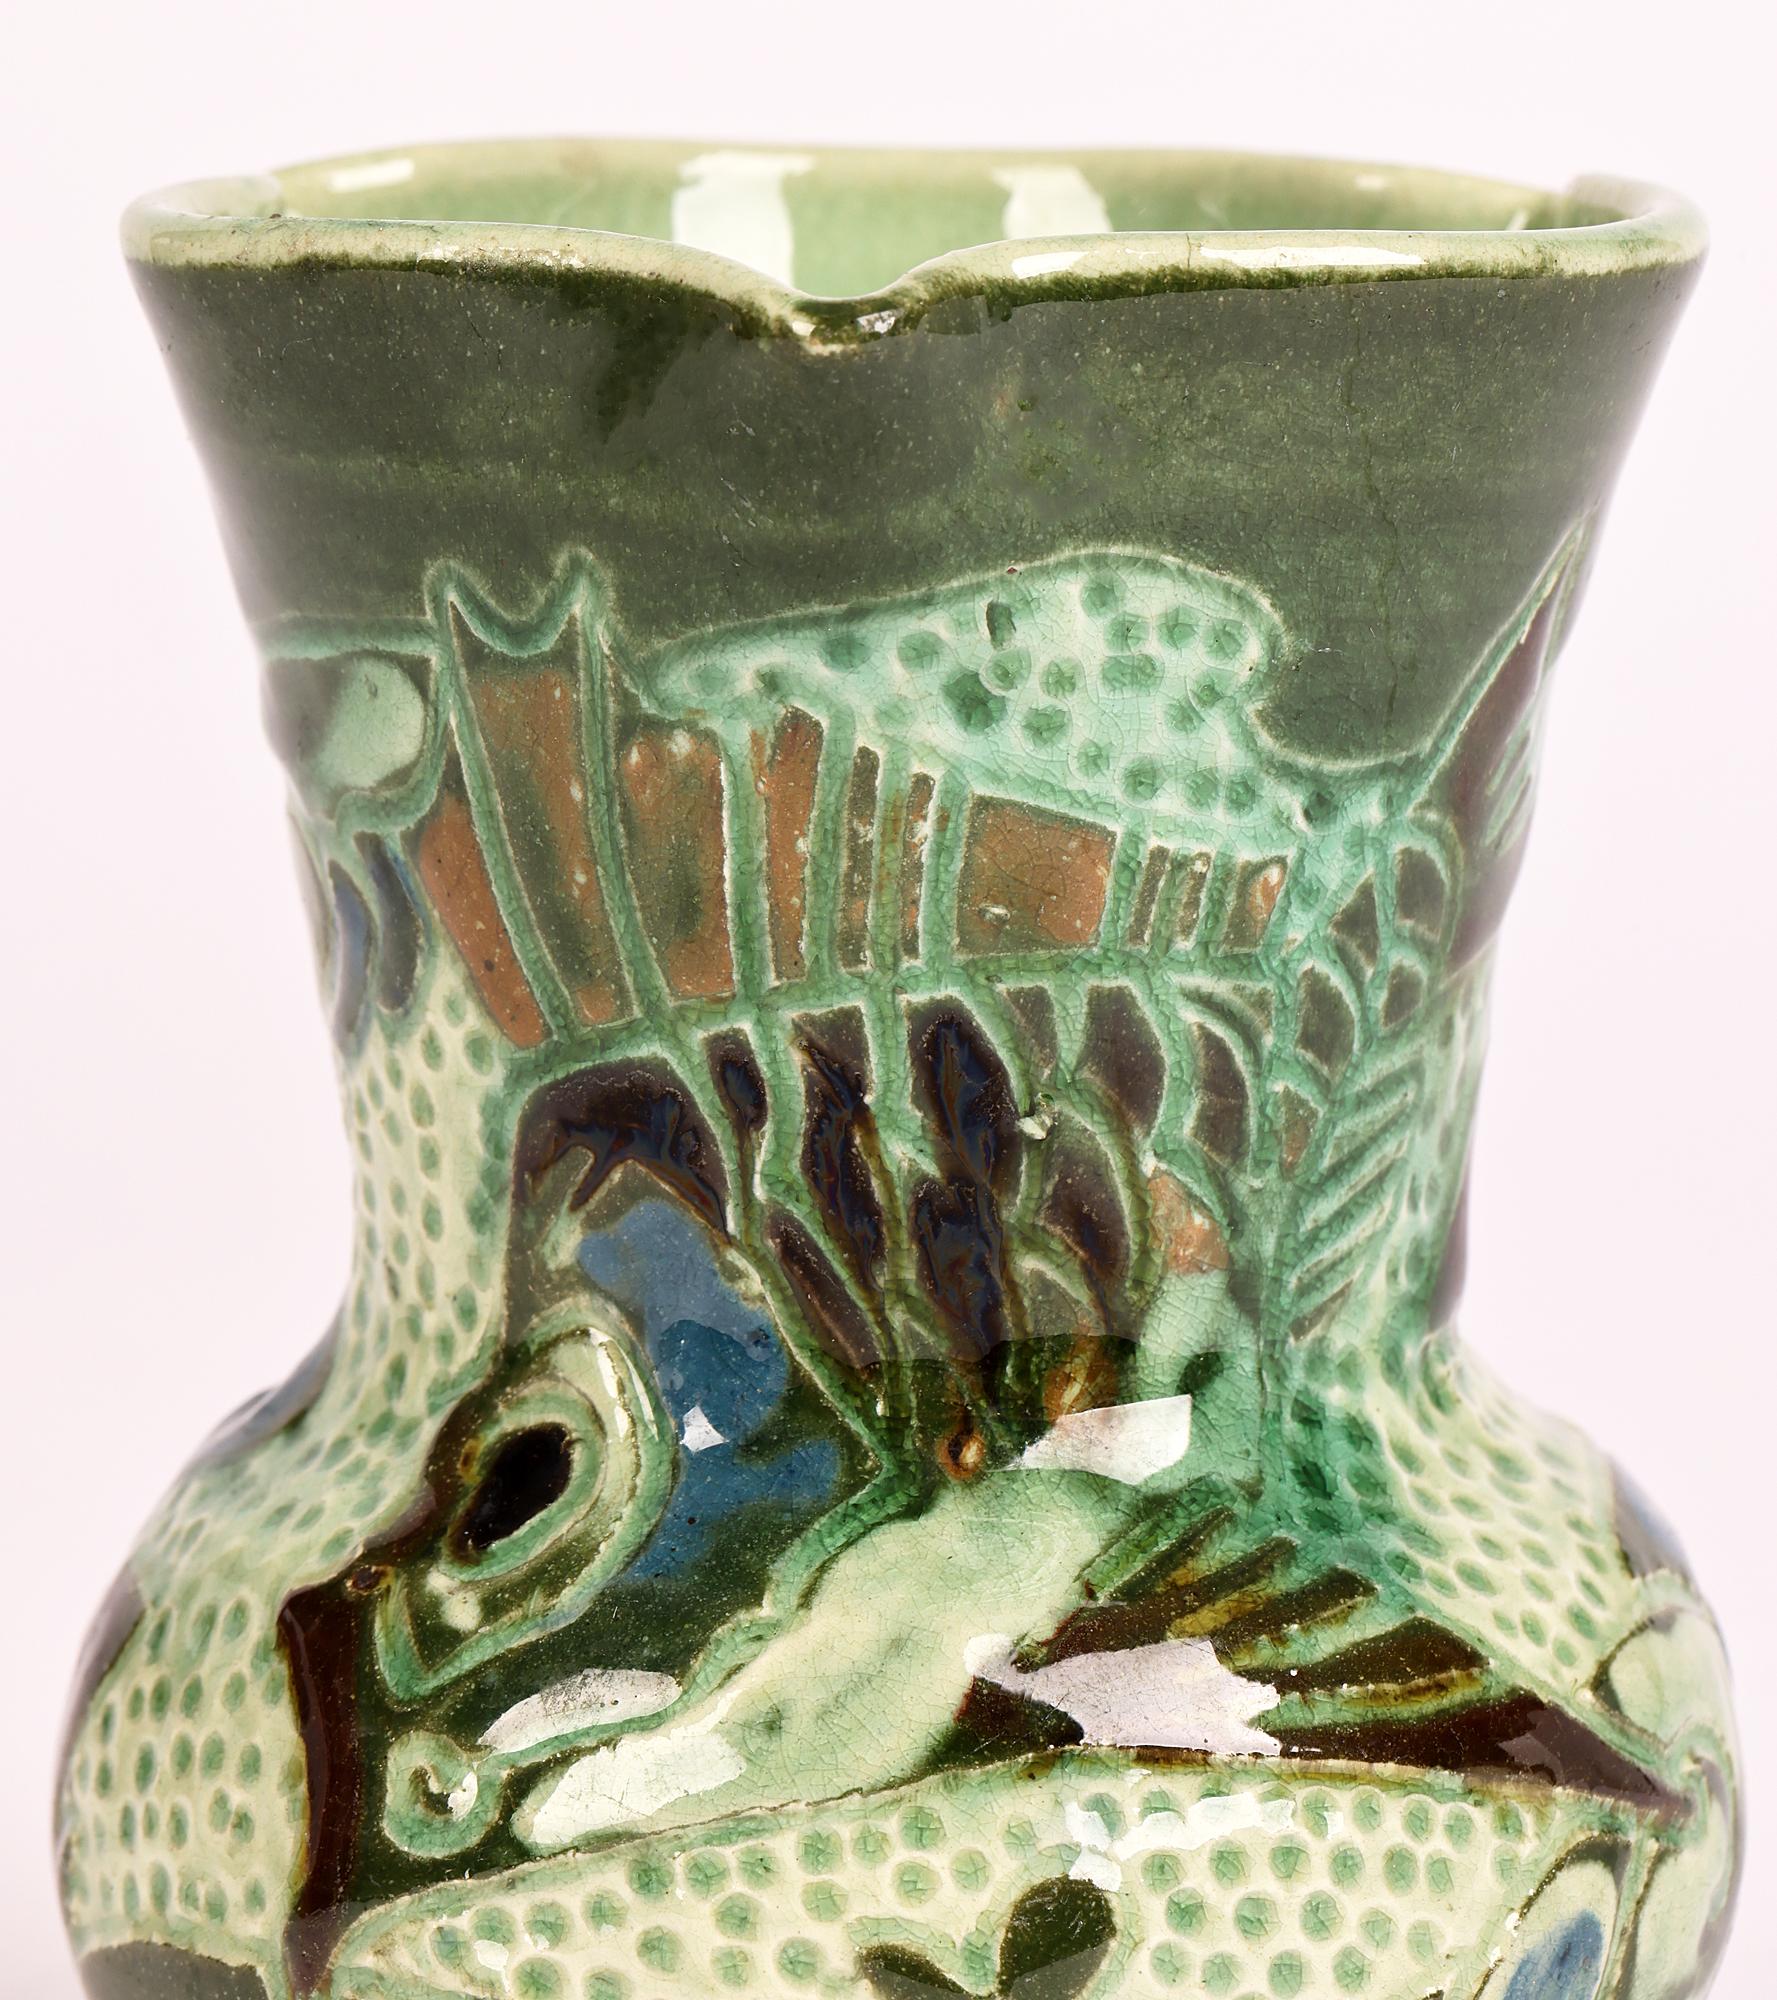 Ravissant vase en poterie d'art du Devon décoré en sgraffite d'un poisson nageant au milieu d'herbes, fabriqué à Barnstaple par le célèbre artiste William Leonard Baron (britannique, 1863-1937) et datant d'environ 1895. 

William Baron a étudié à